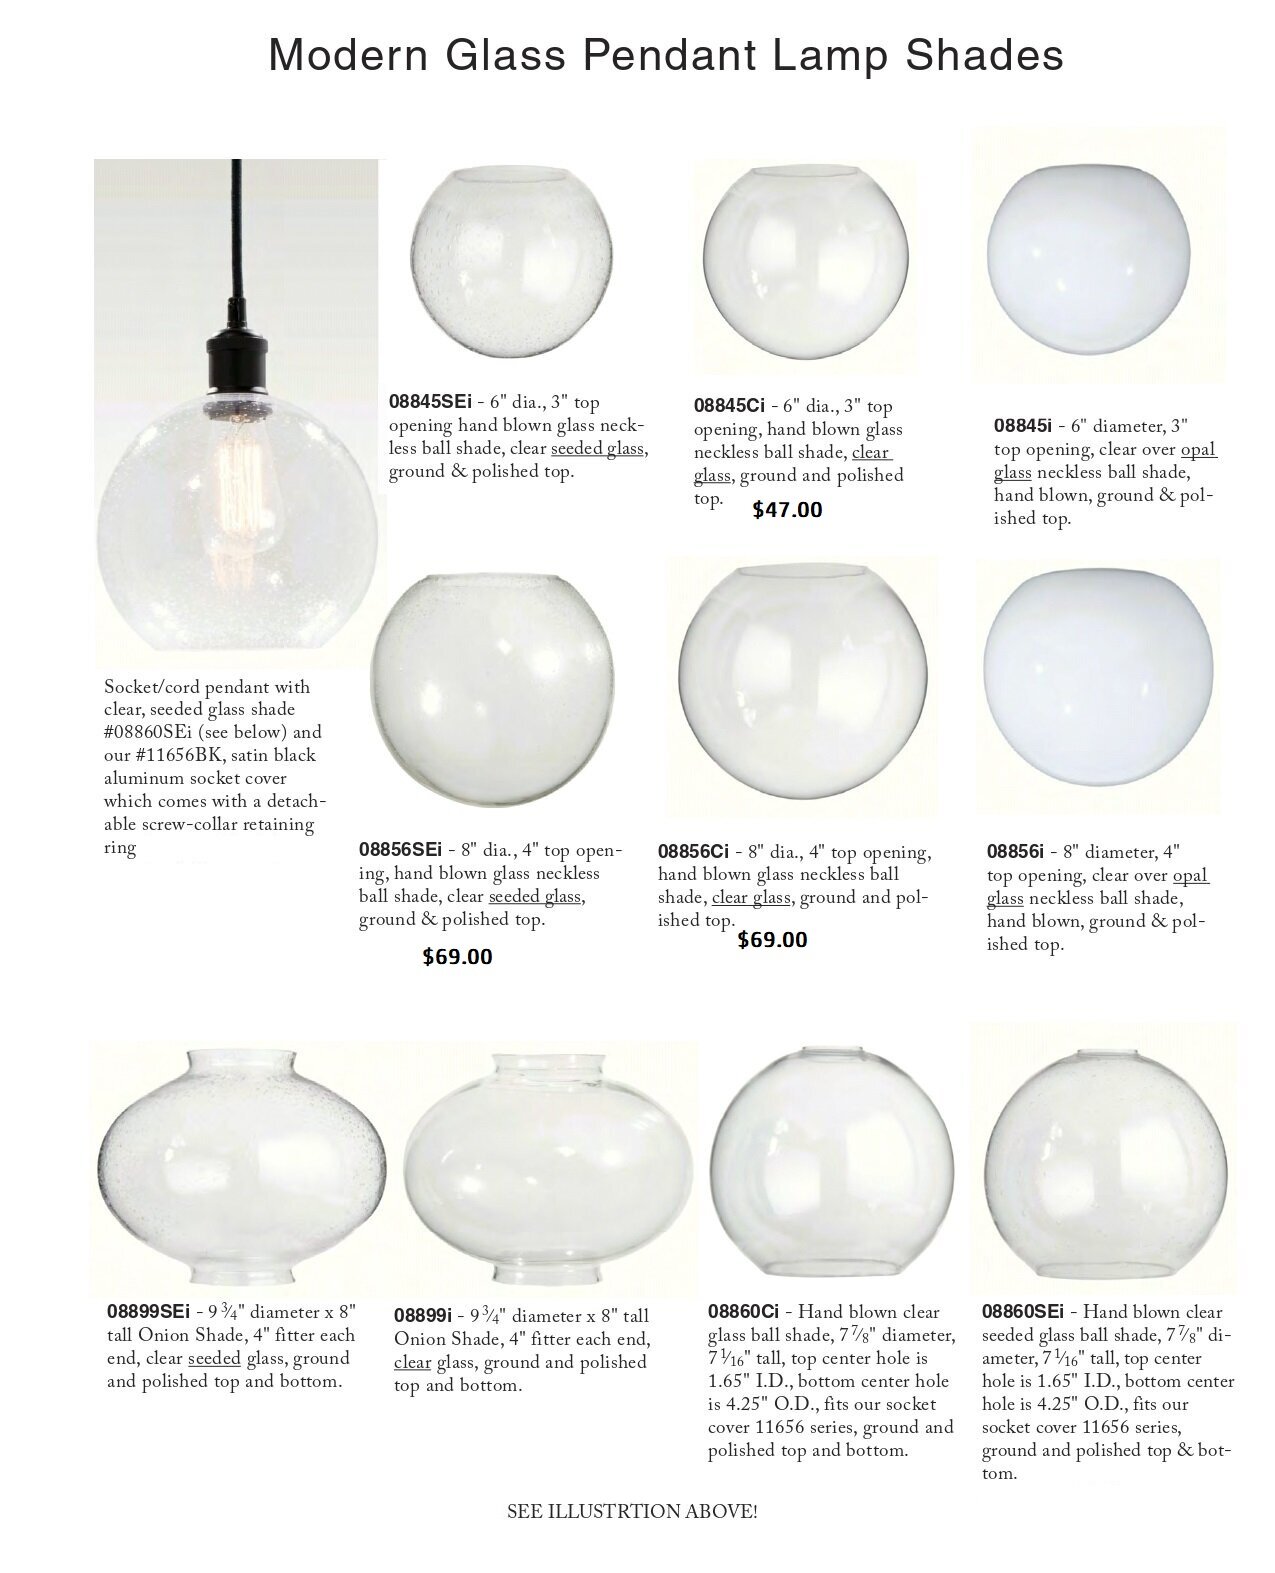 B&P Lamp 6 Opal Glass Neckless Ball Shade